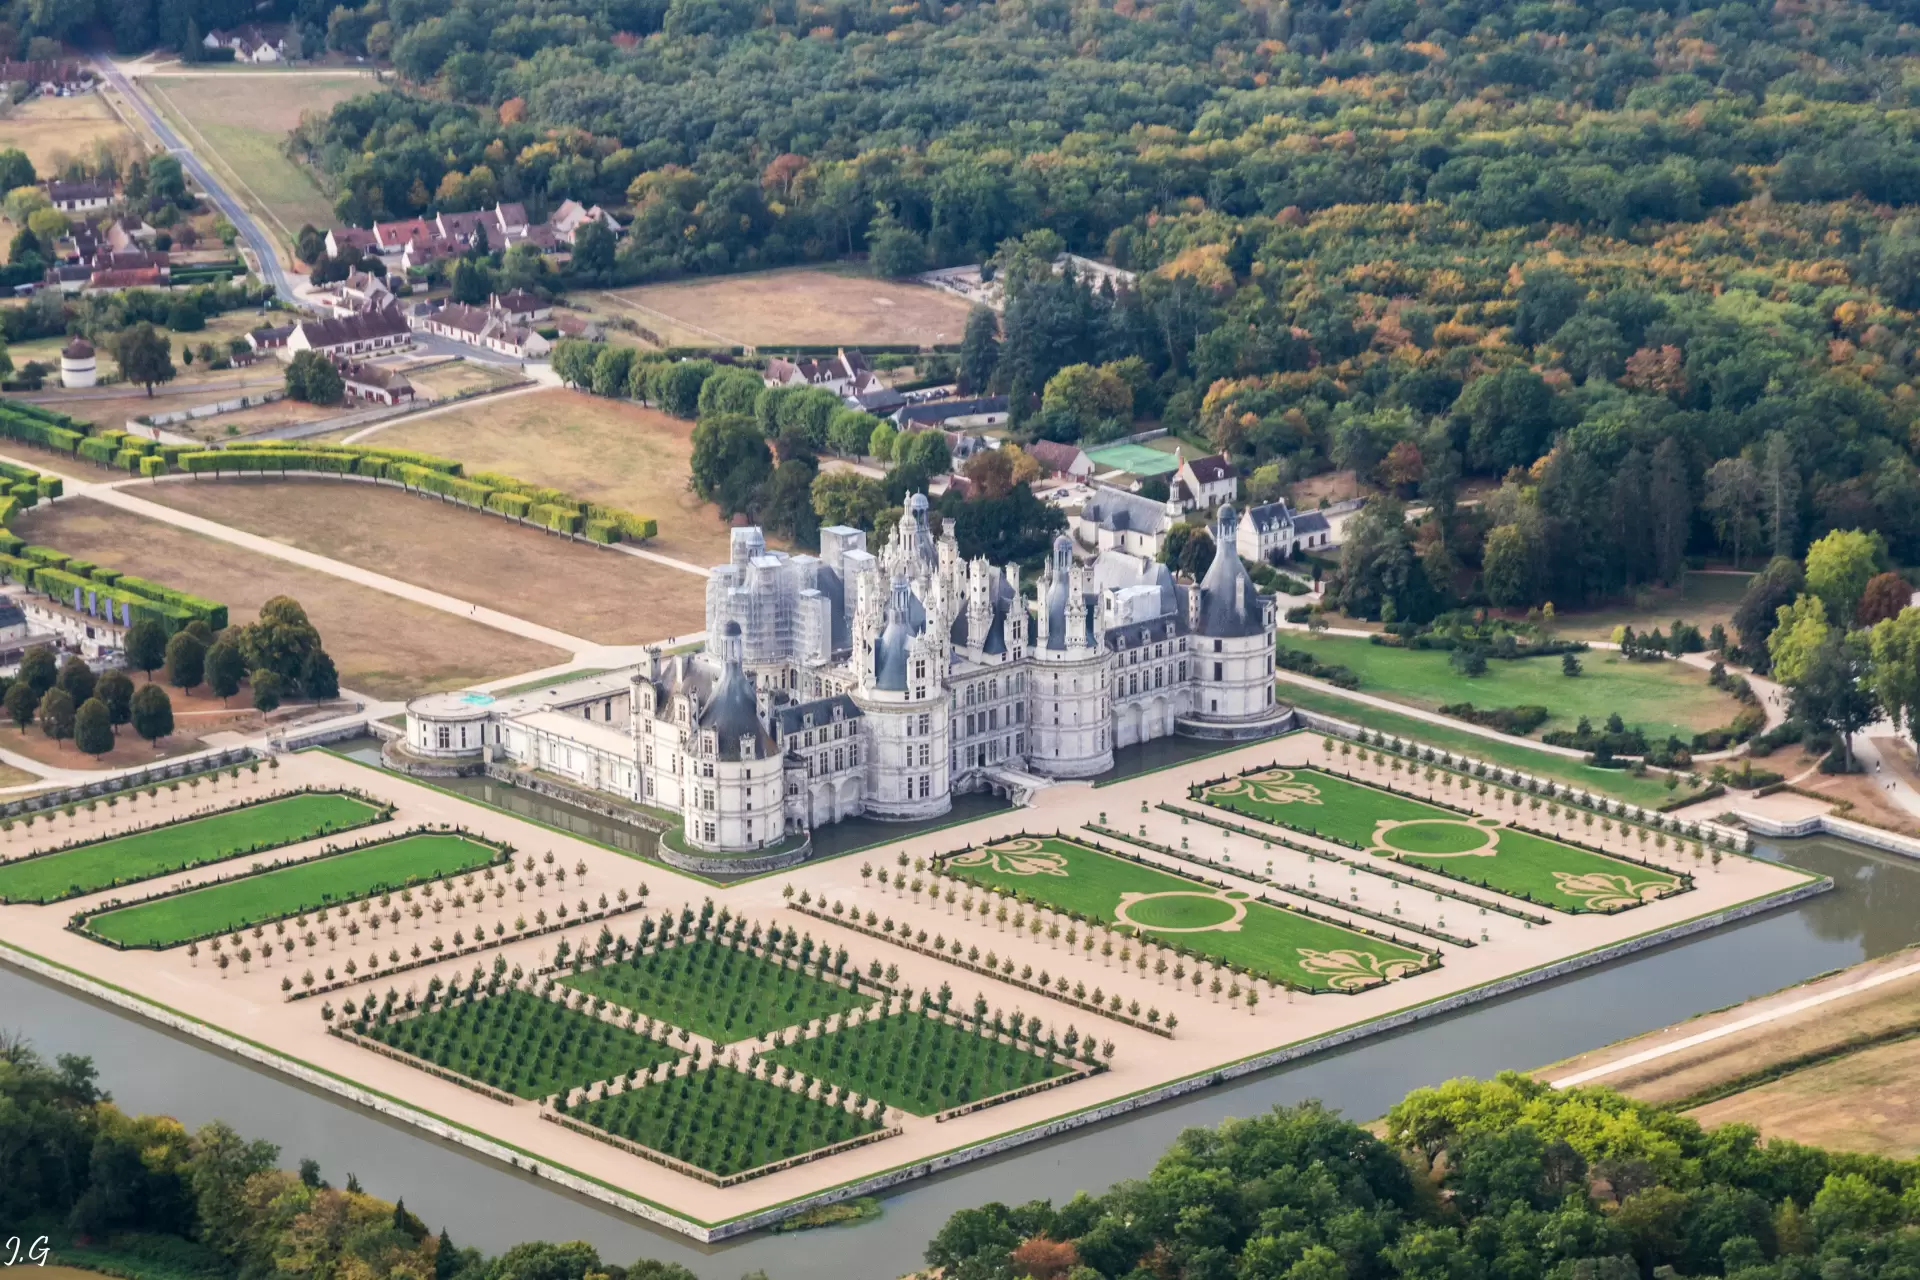 Castele din Franţa